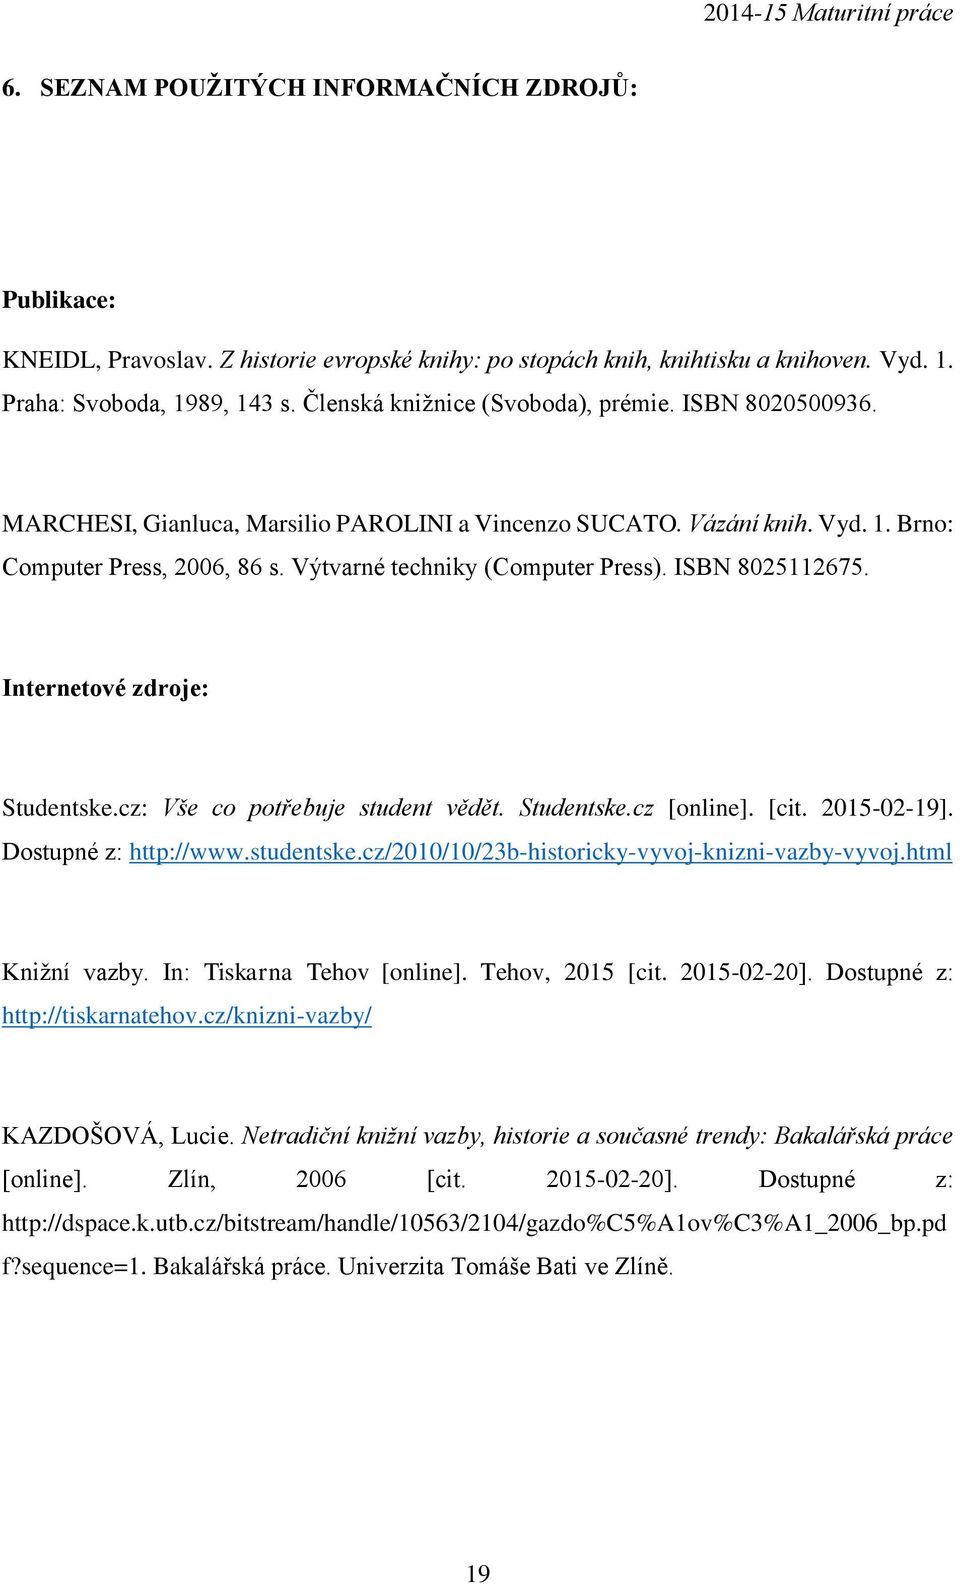 ISBN 8025112675. Internetové zdroje: Studentske.cz: Vše co potřebuje student vědět. Studentske.cz [online]. [cit. 2015-02-19]. Dostupné z: http://www.studentske.